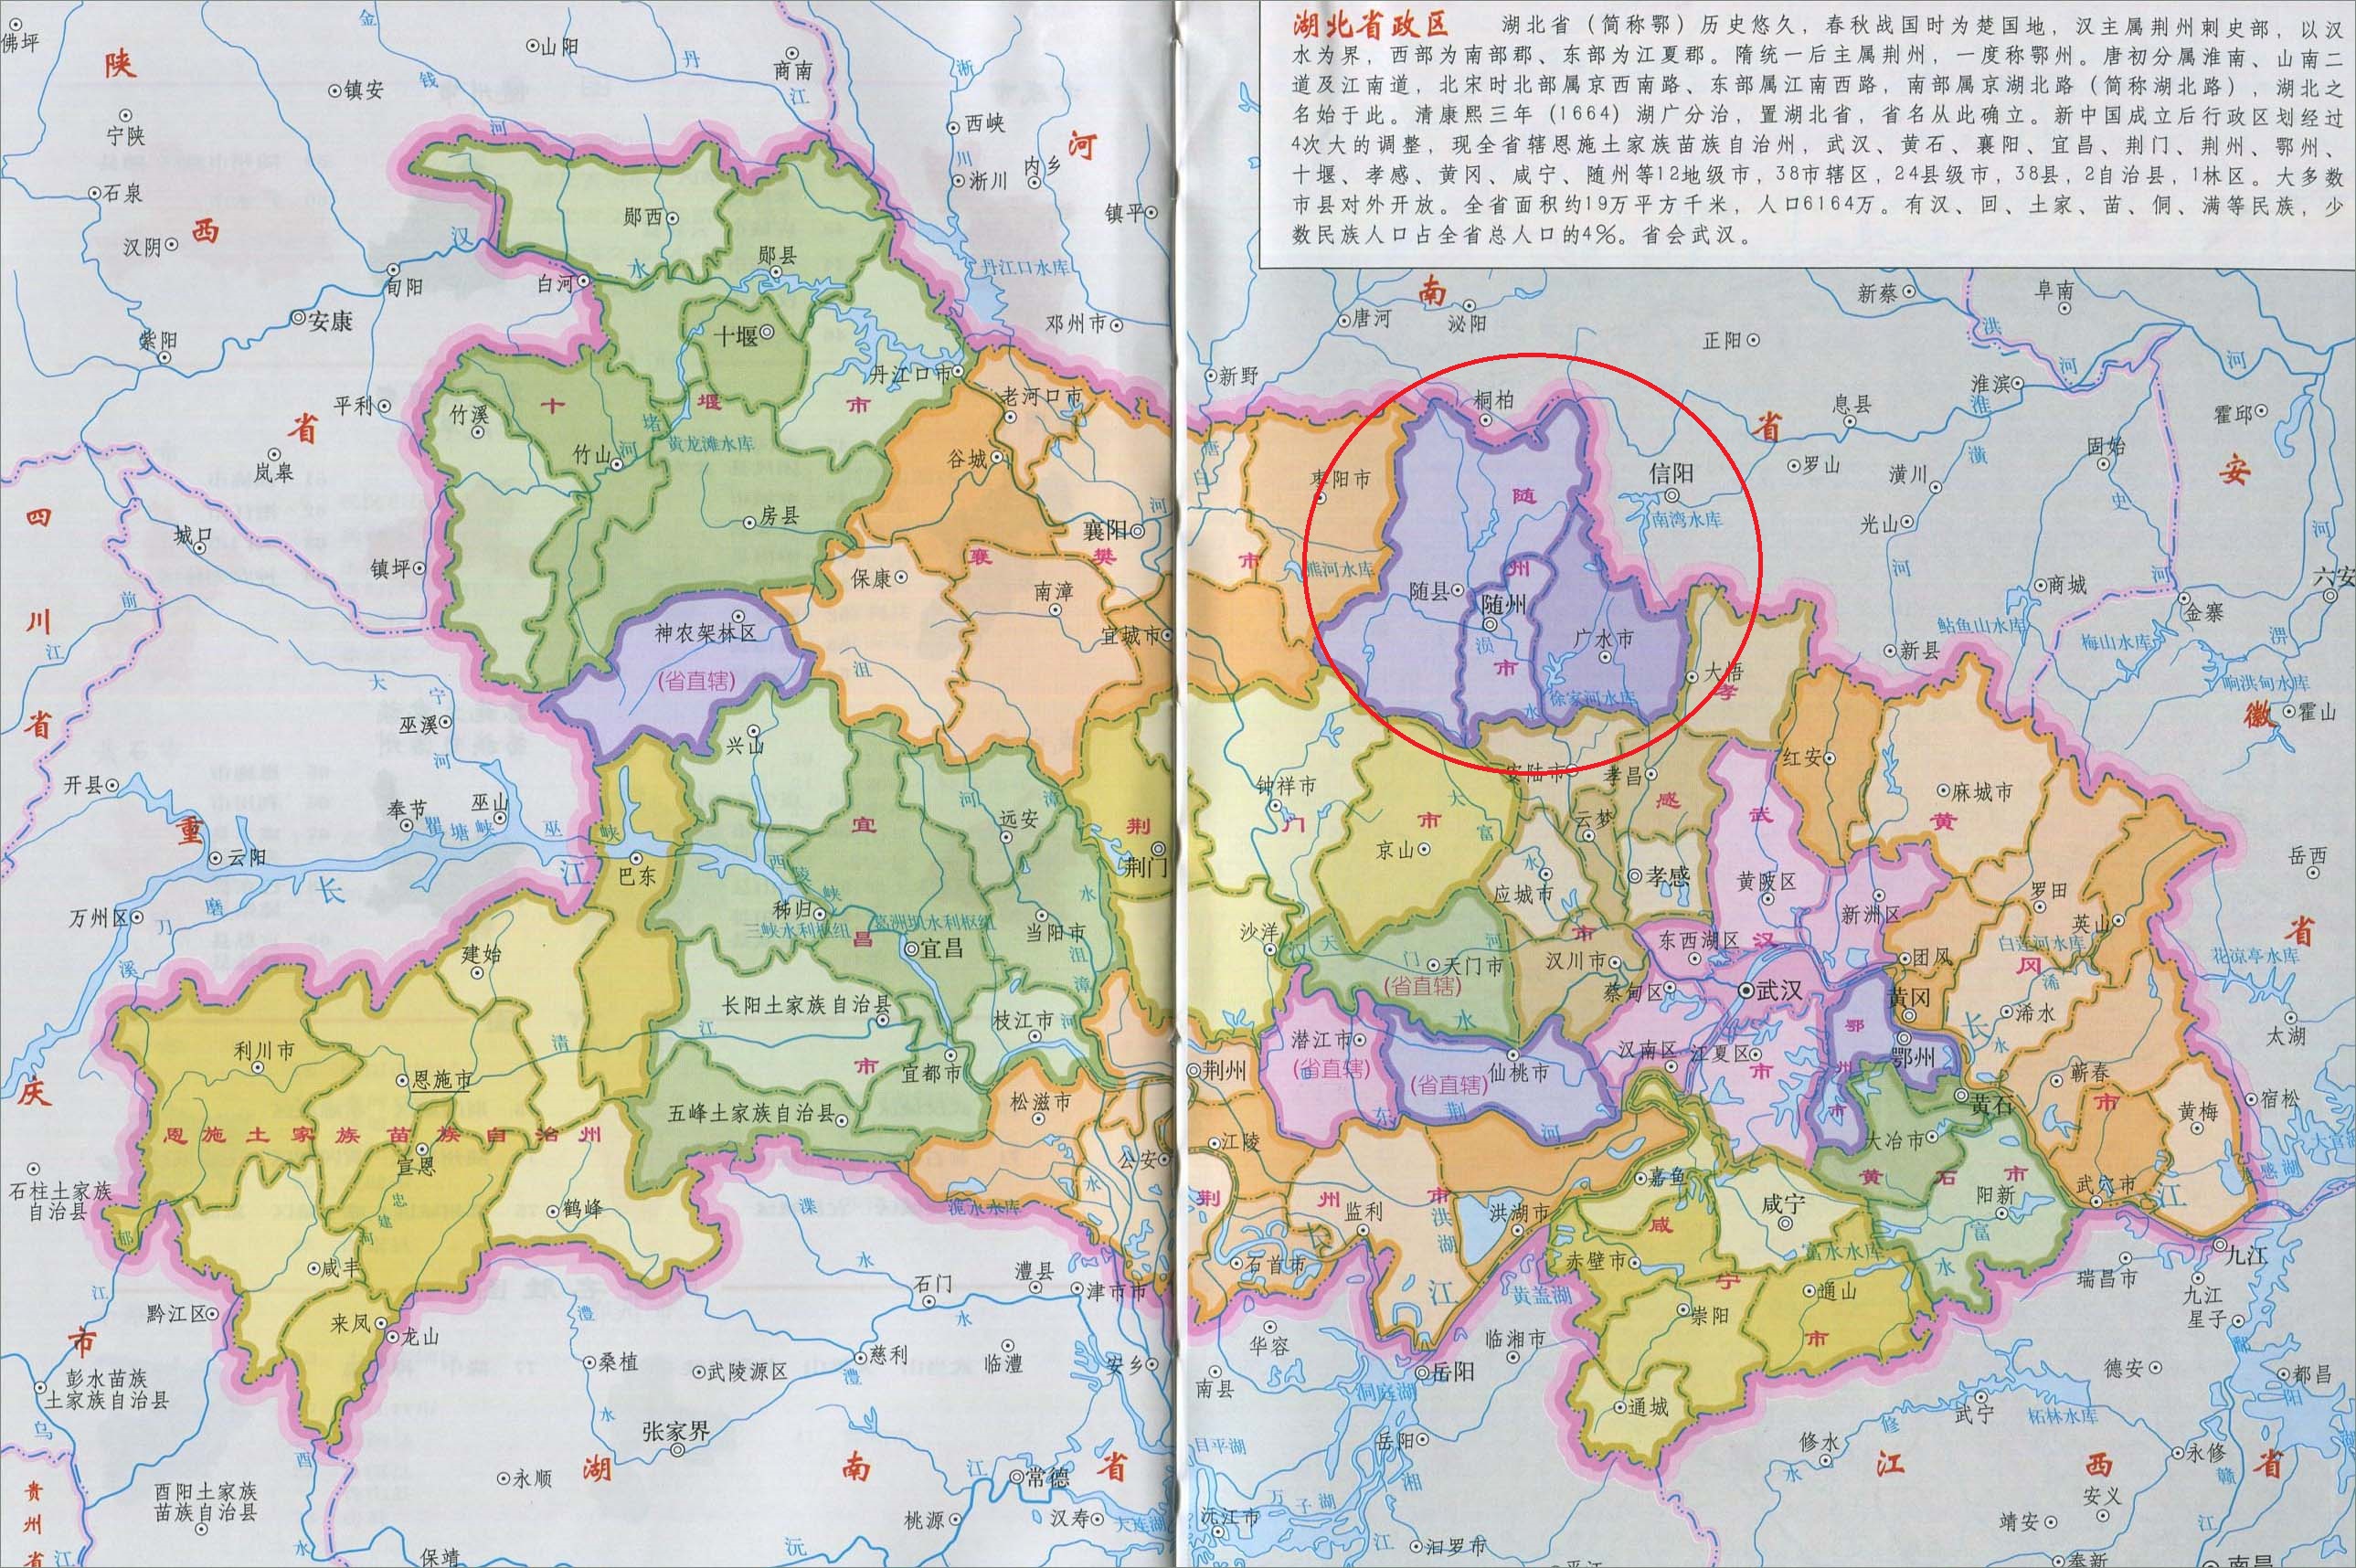 下面是湖北省行政区划地图上面的随州市